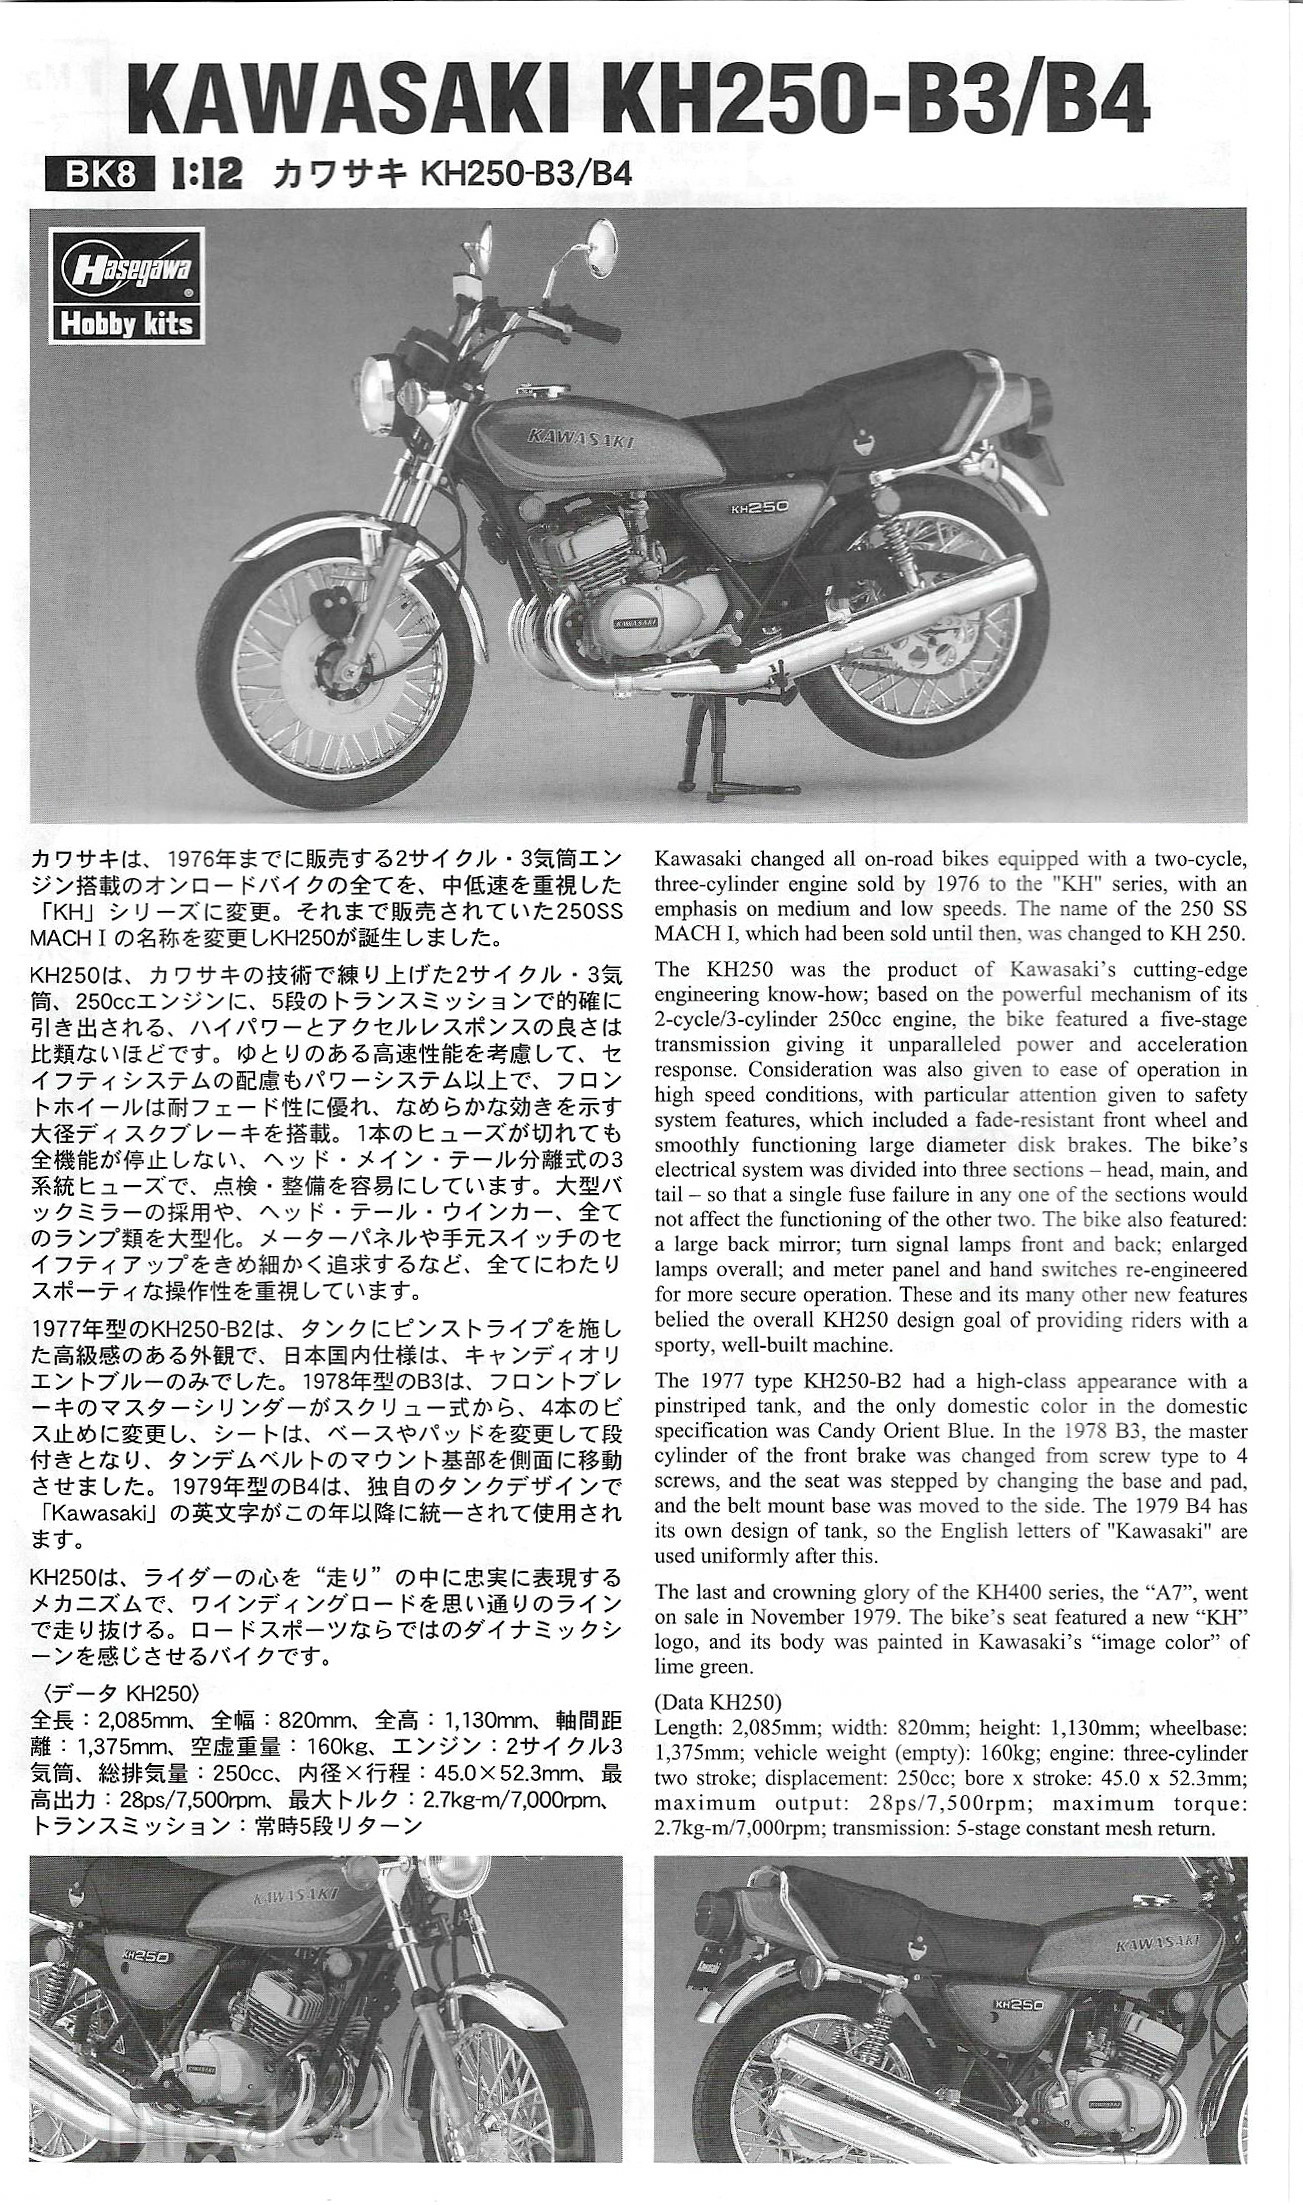 21508 Hasegawa 1/12 Kawasaki kh250-B3/B4 motorcycle (1978/1979)